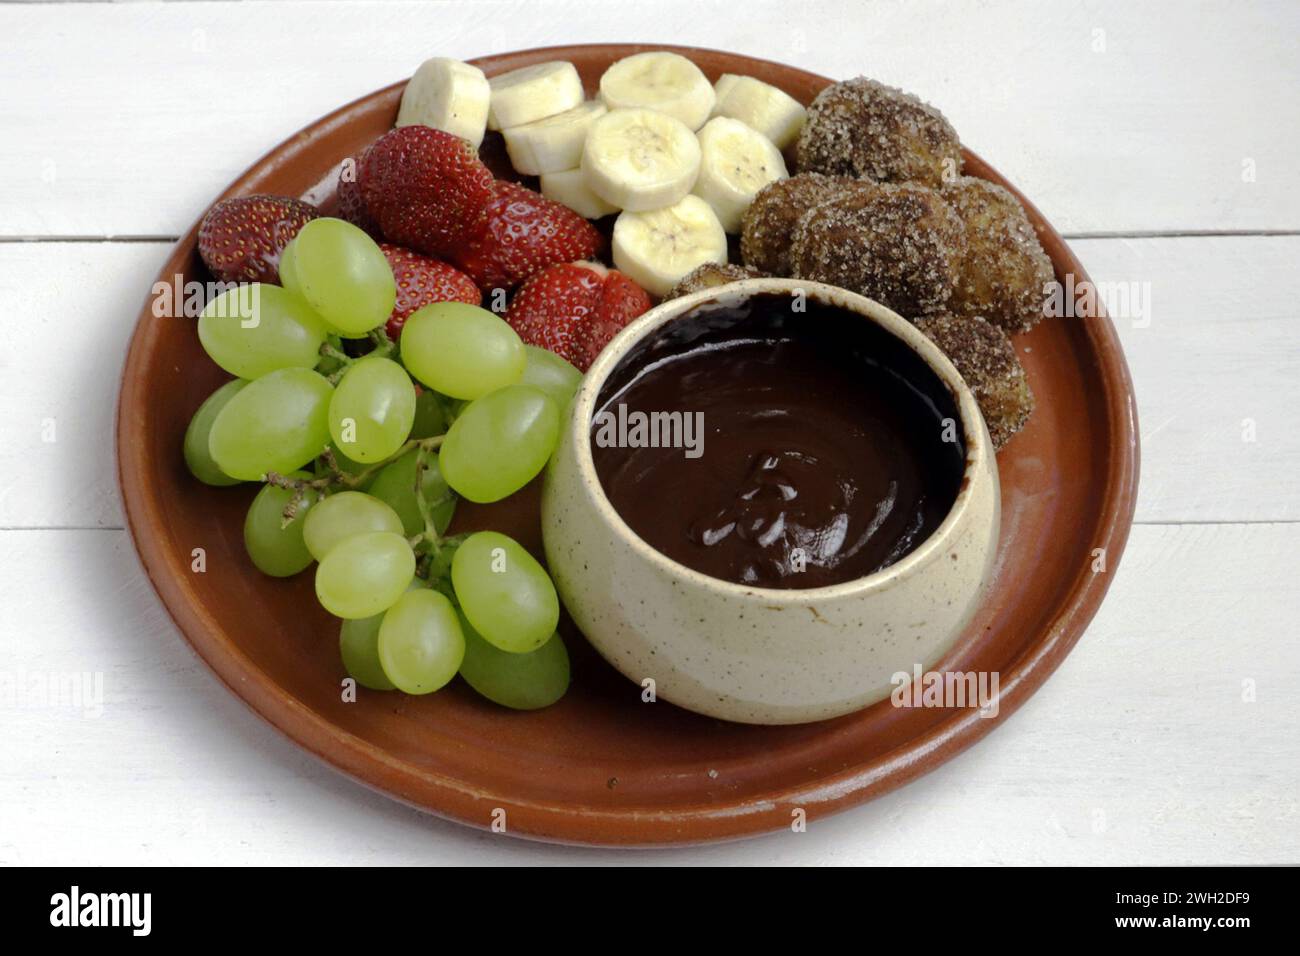 Una deliziosa fonduta al cioccolato servita con churros croccanti, uva fresca, fragole e banana. Foto Stock